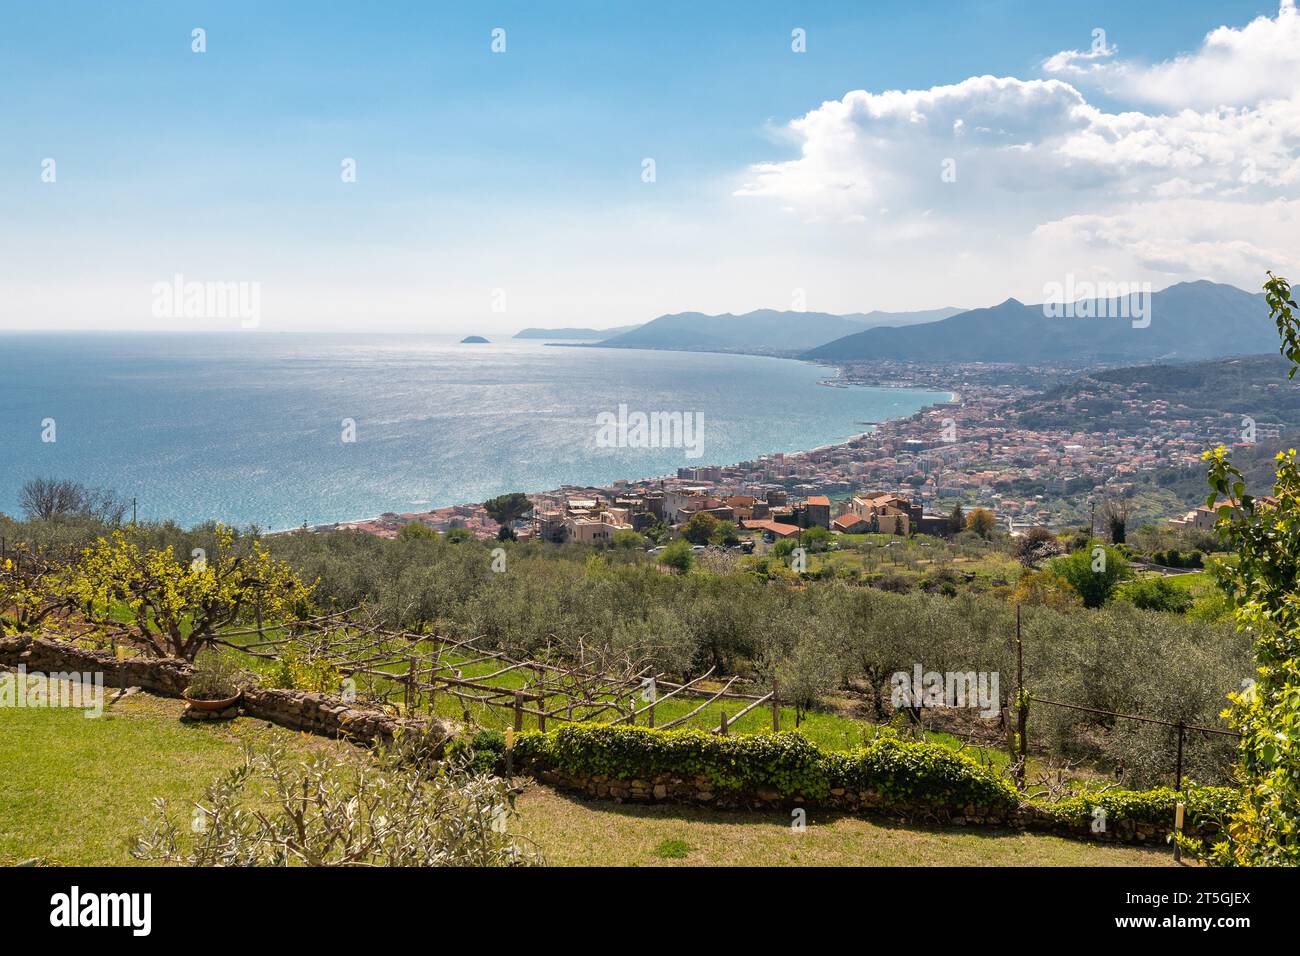 Erhöhter Blick auf die PalmenRiviera von einem Terrassenfeld mit den Küstenstädten Pietra Ligure, Loano und der Gallinara Insel, Savona, Ligurien Stockfoto